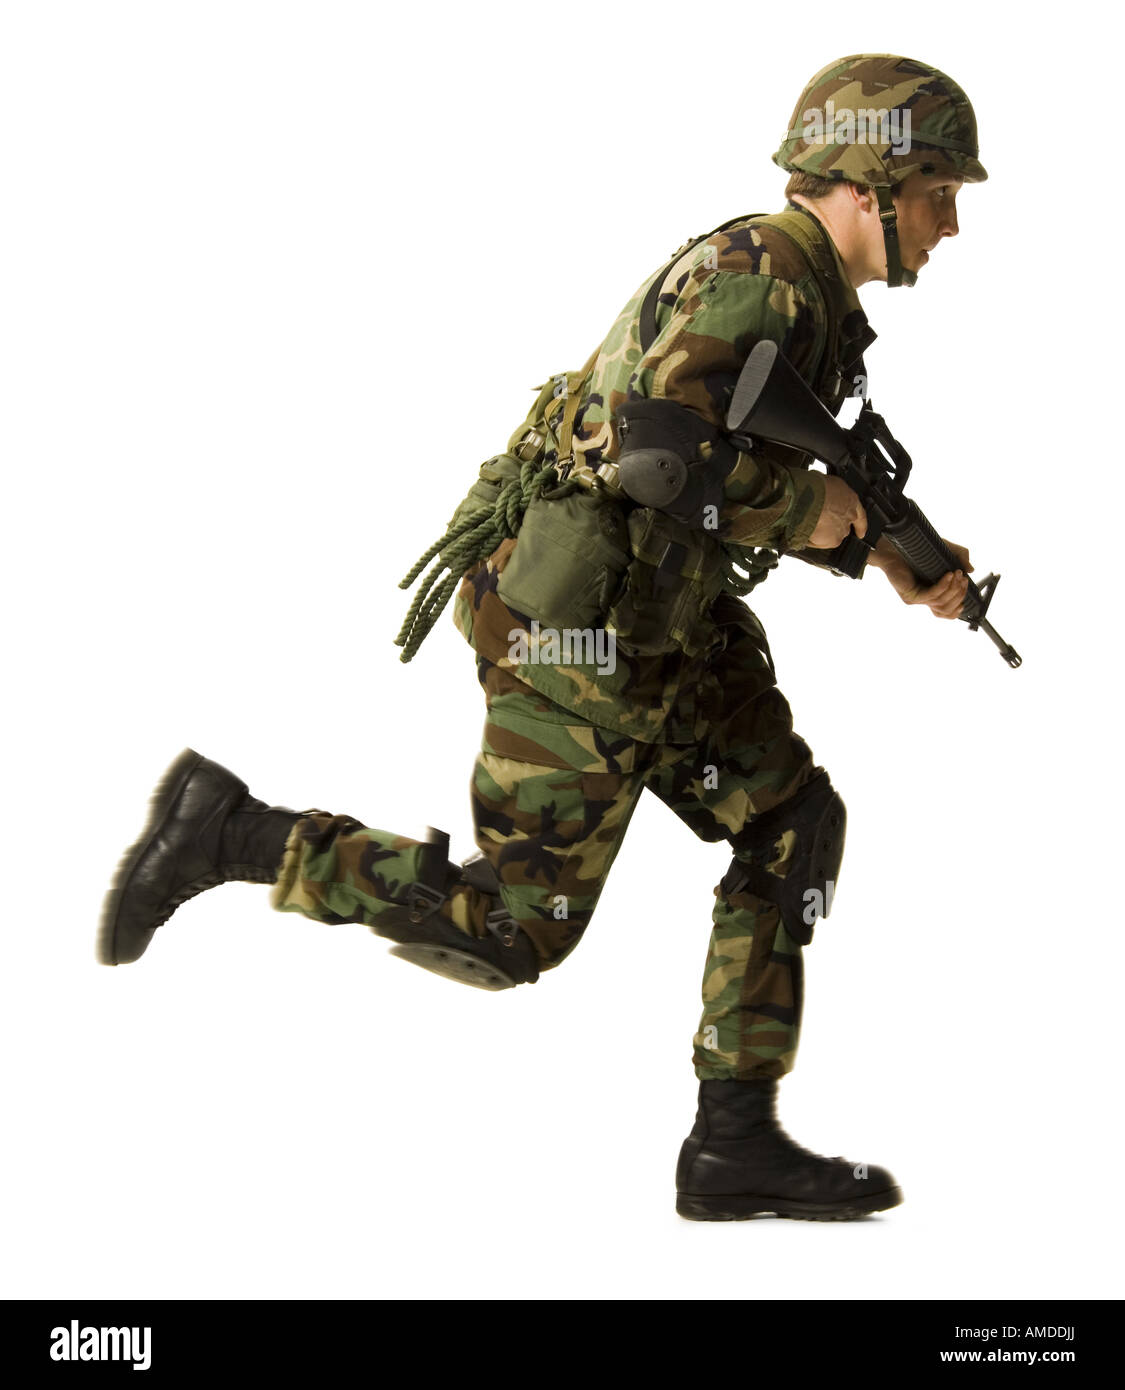 Soldier in uniform with gun running Stock Photo